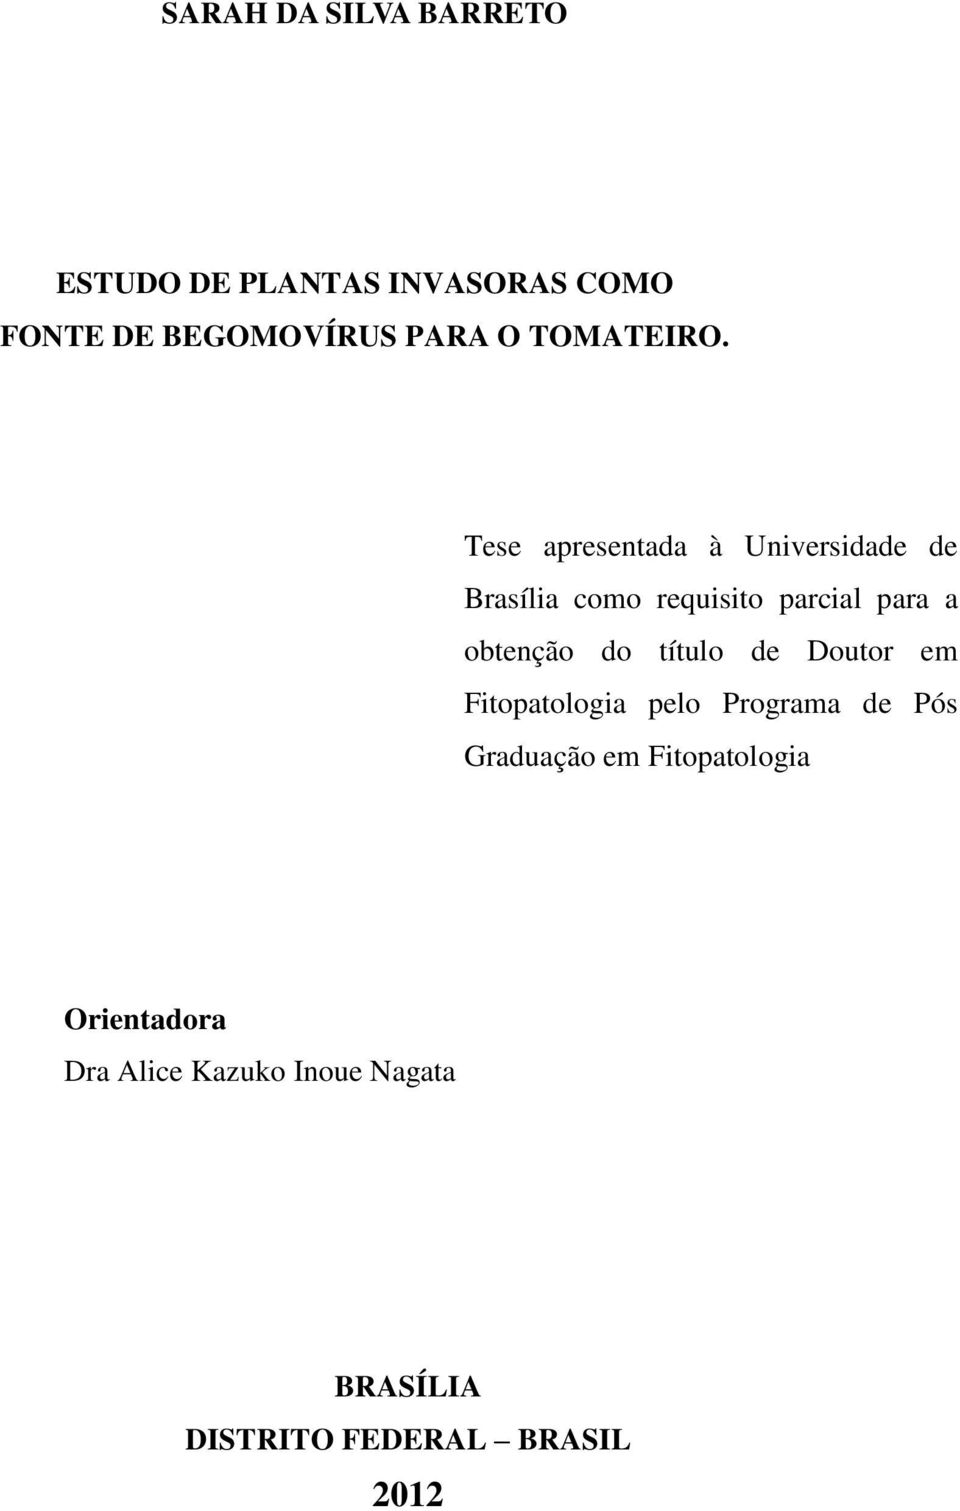 Tese apresentada à Universidade de Brasília como requisito parcial para a obtenção do